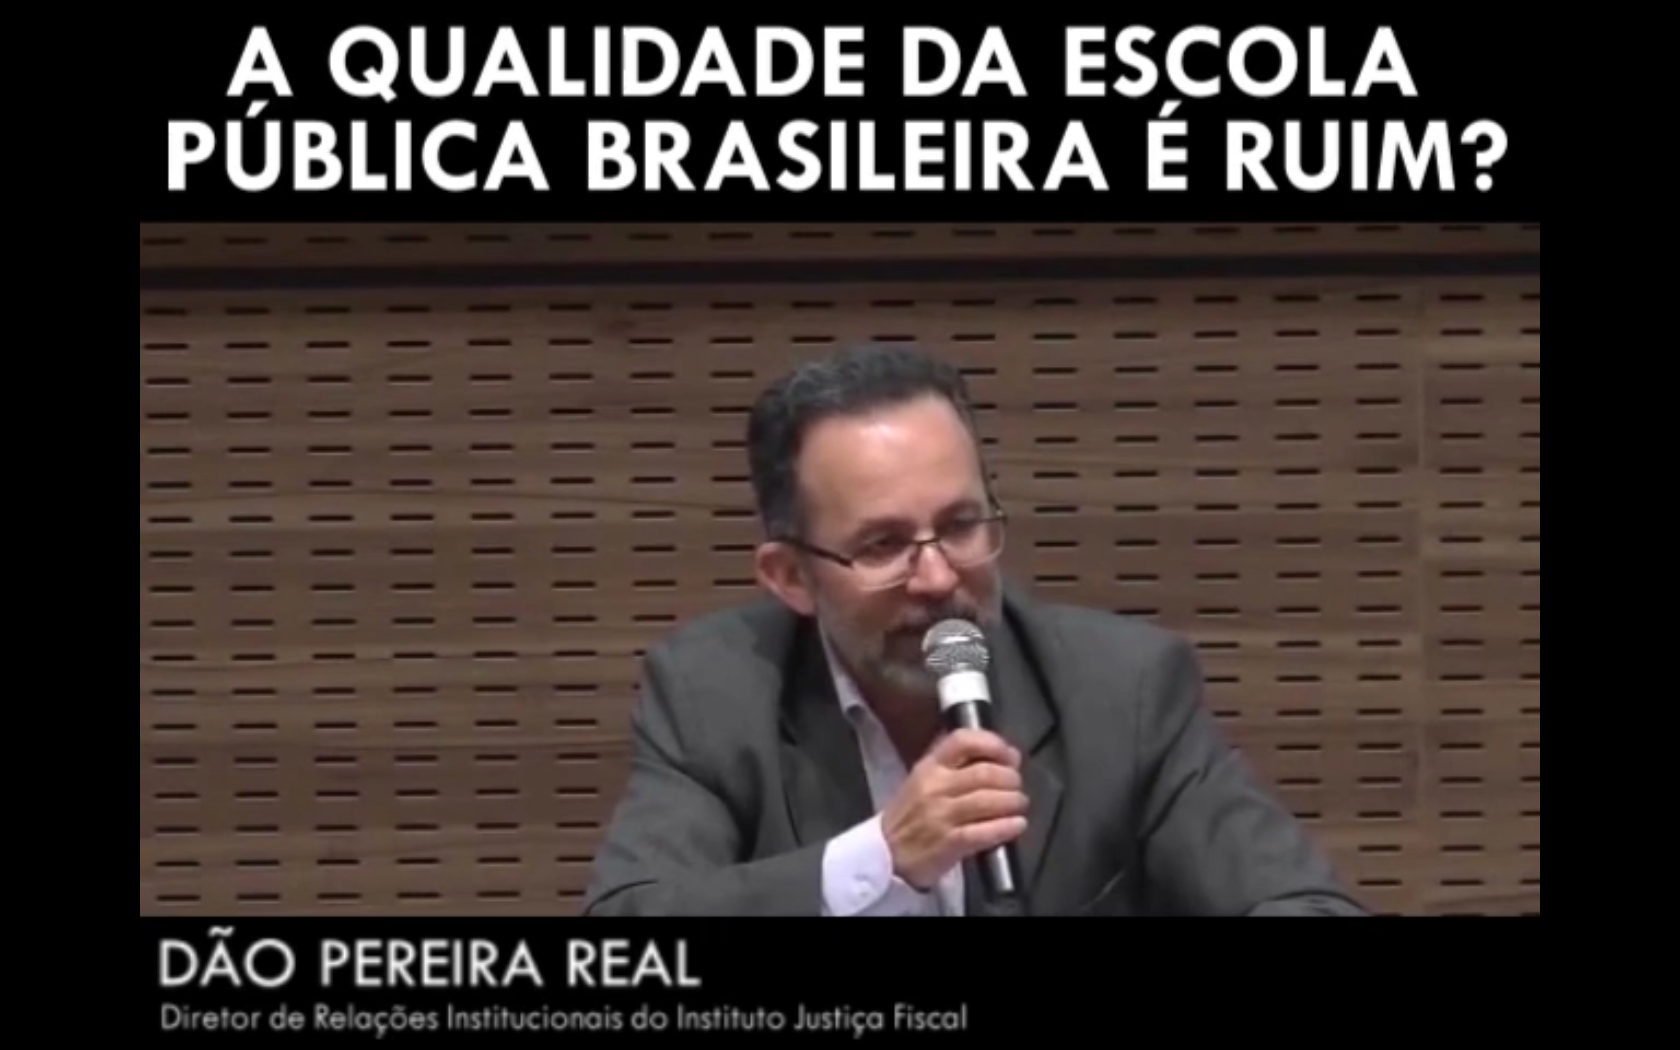 A qualidade da escola pública brasileira é ruim? - Dão Pereira Real